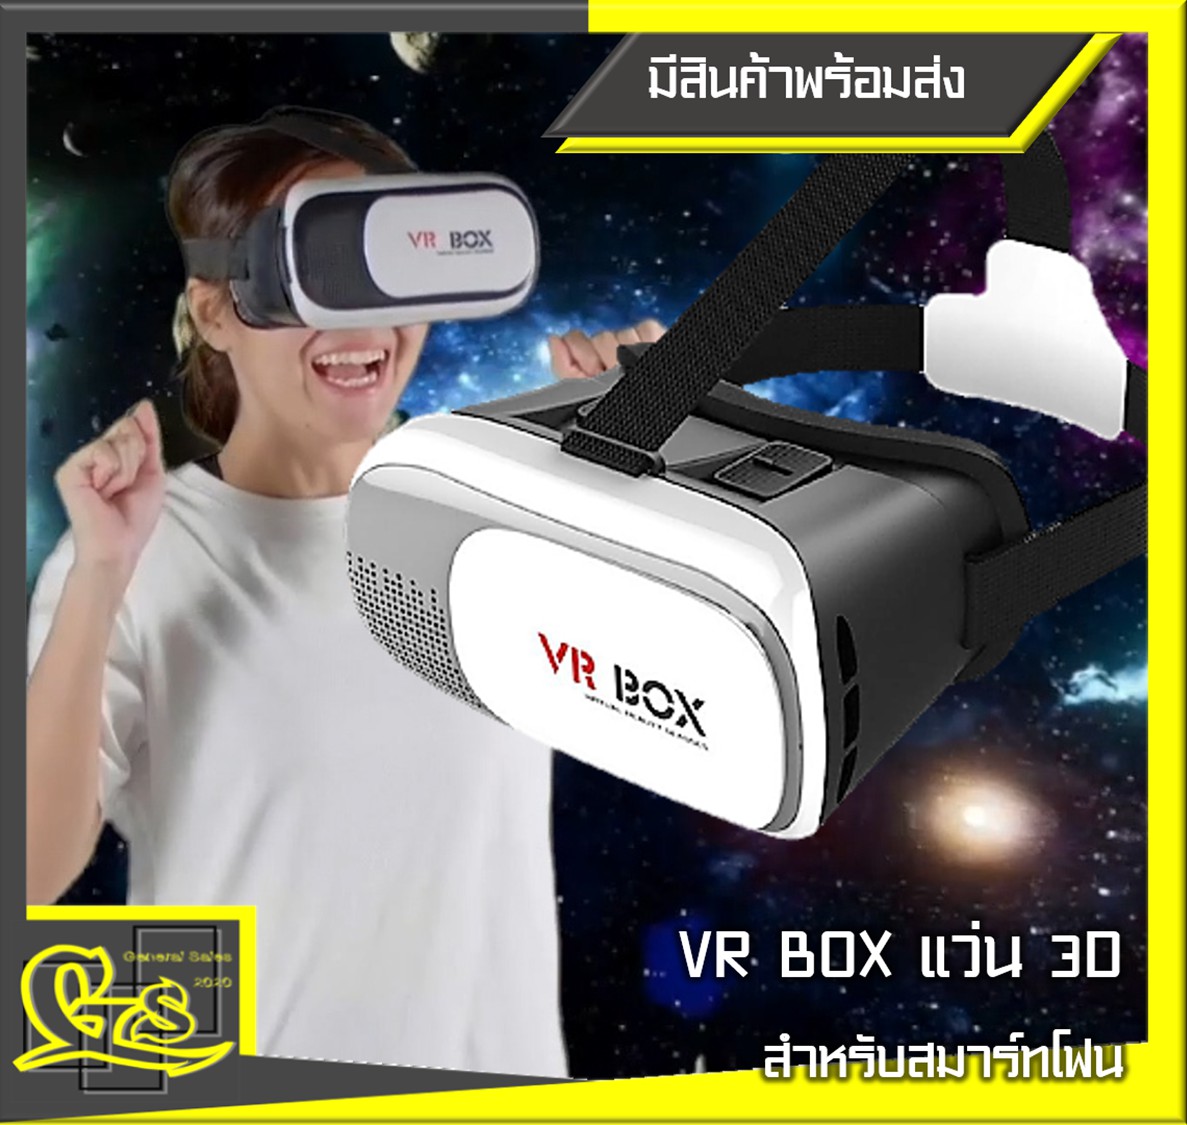 VR Box 2.0 VR Glasses Headset แว่น 3D สำหรับสมาร์ทโฟนทุกรุ่น (White) รองรับสมาร์ทโฟนทุกรุ่นทุกยี่ห้อตั้งแต่ขนาดหน้าจอ 4.7-6.0 นิ้ว